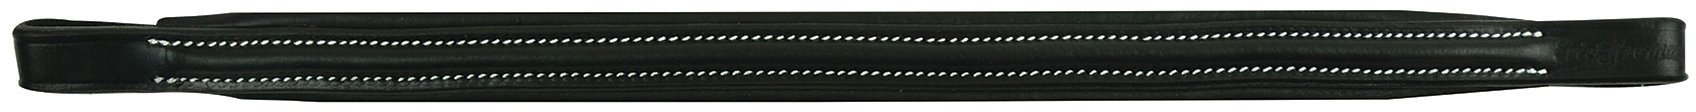 Eric Thomas Unisex's 307402202 Pro Thin Round Raised/Linated Stirnband, Schwarz, One Size